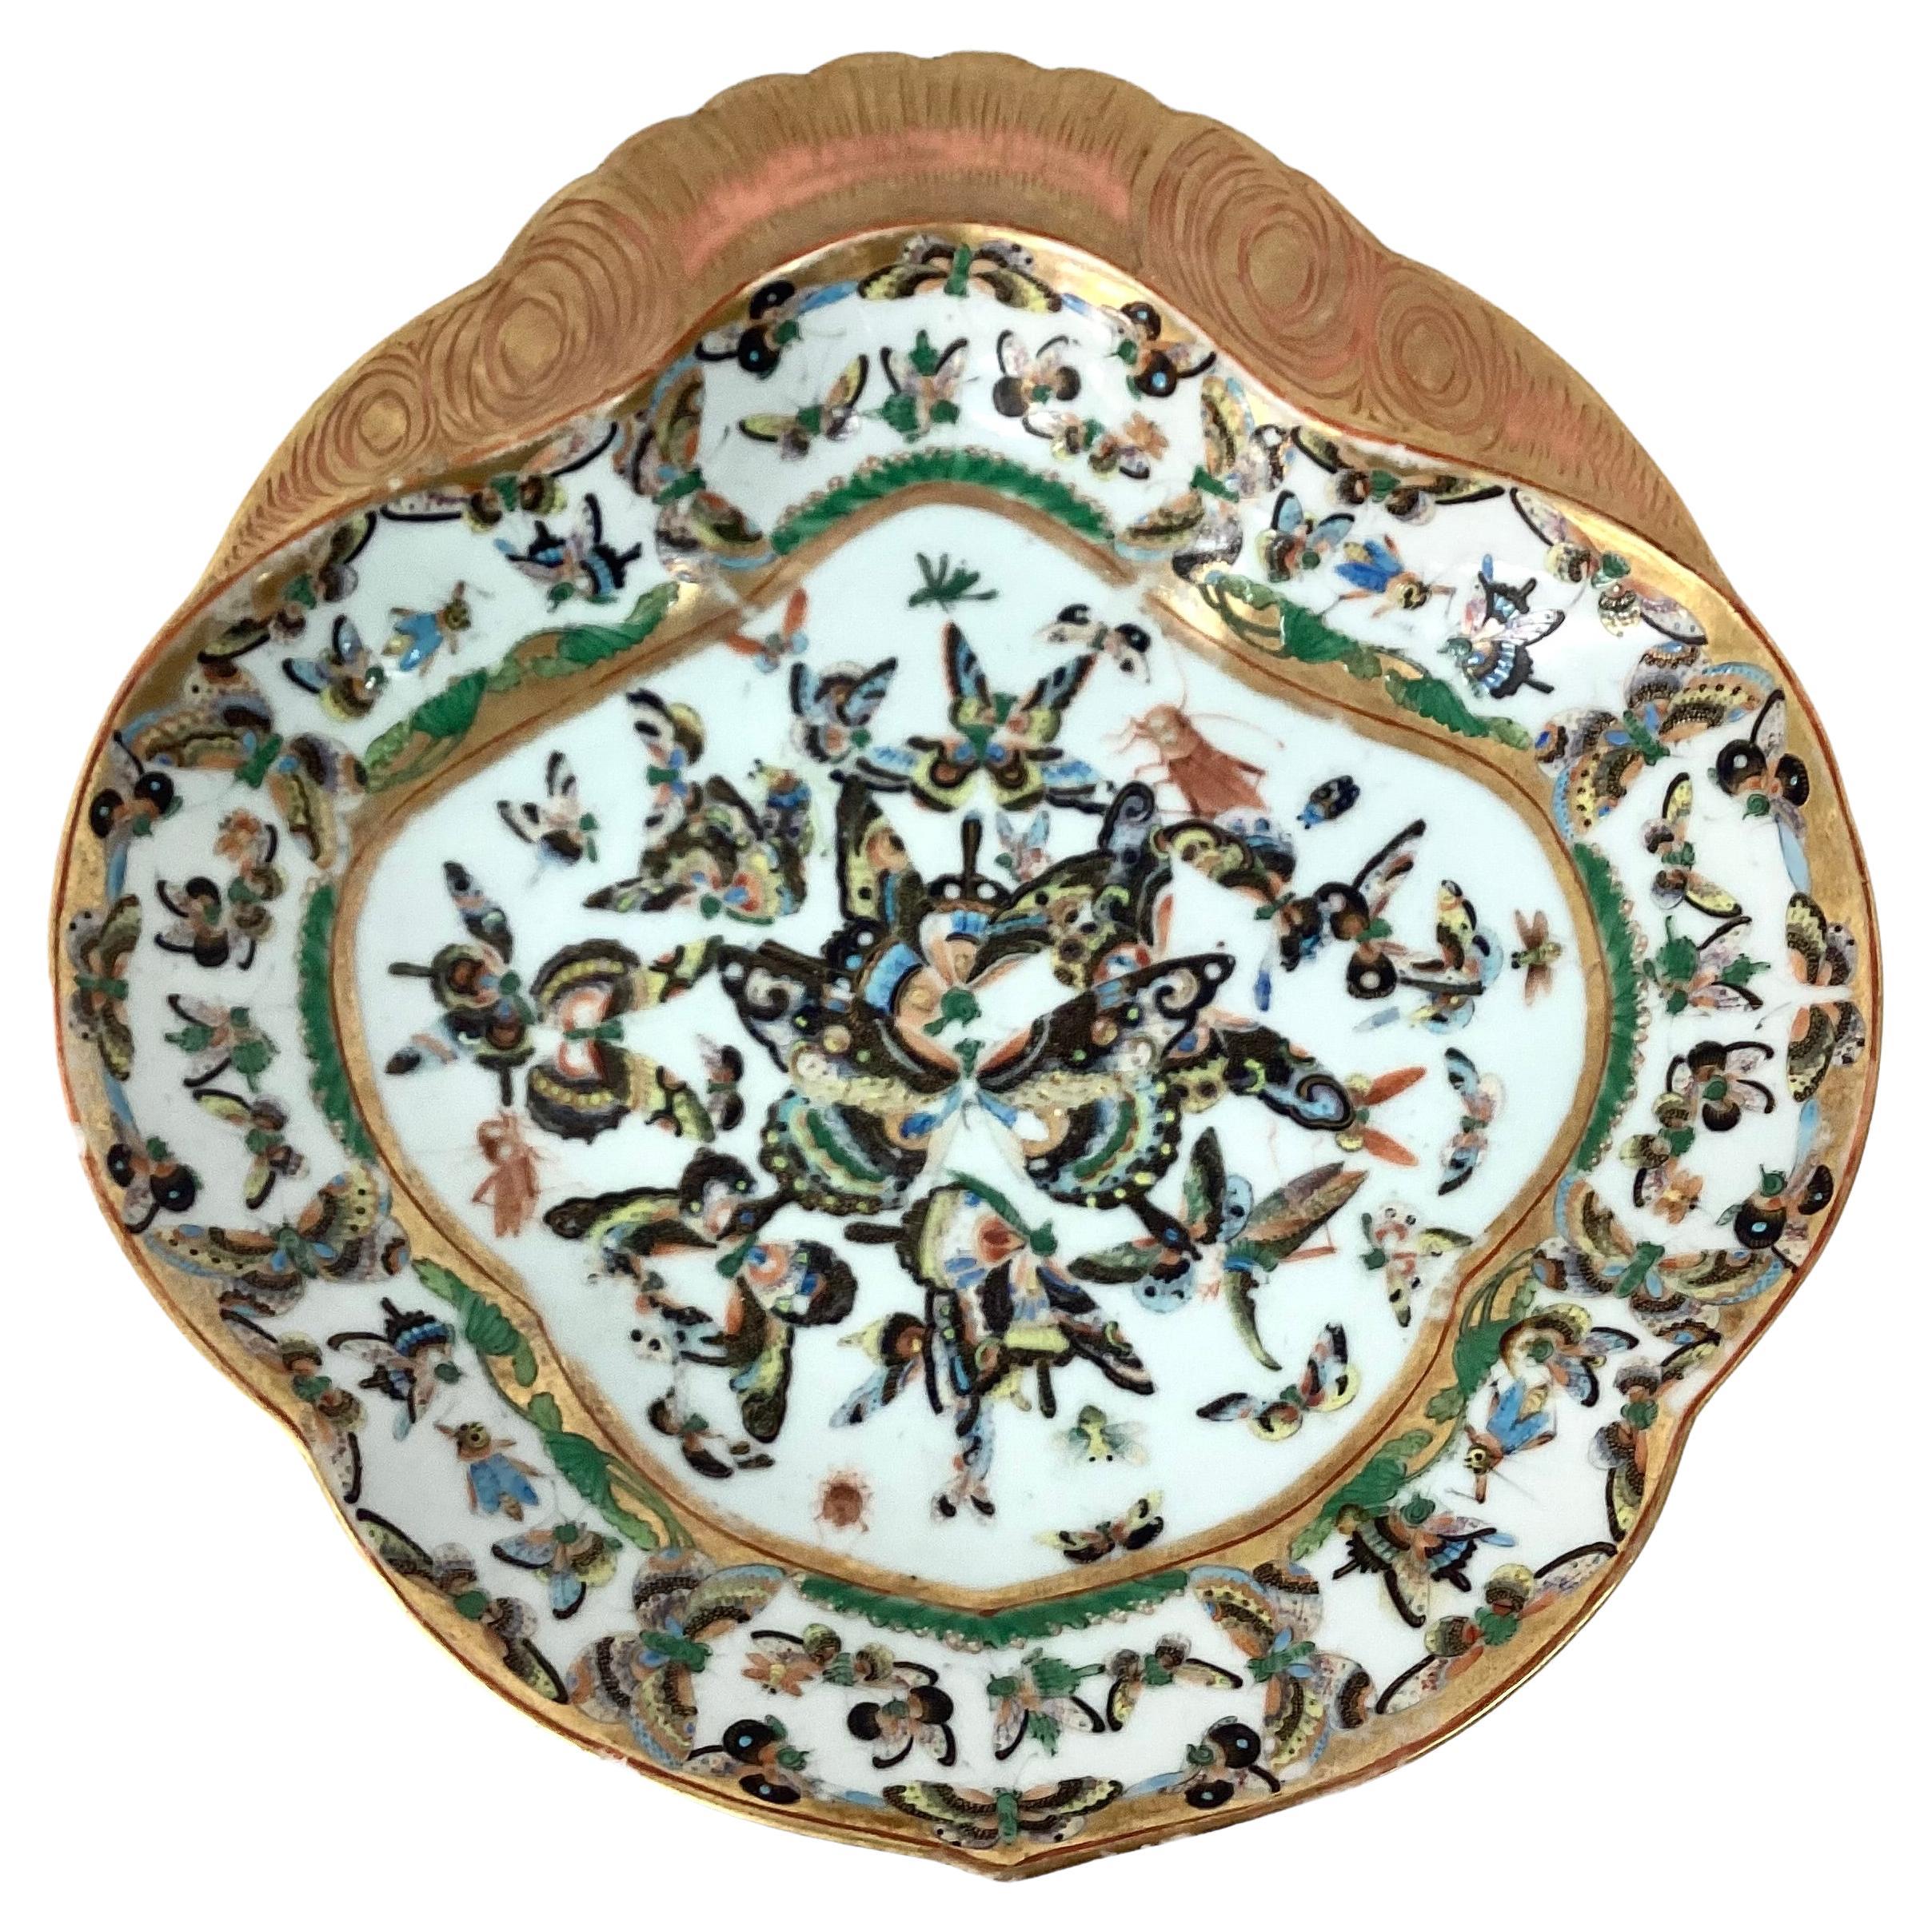 Rare paire d'anciens plats à papillon en porcelaine d'exportation chinoise. Paire de plats uniques comprenant un large bord doré et une garniture sur les assiettes décorées de papillons dans des couleurs vertes, noires, jaunes et dorées. 